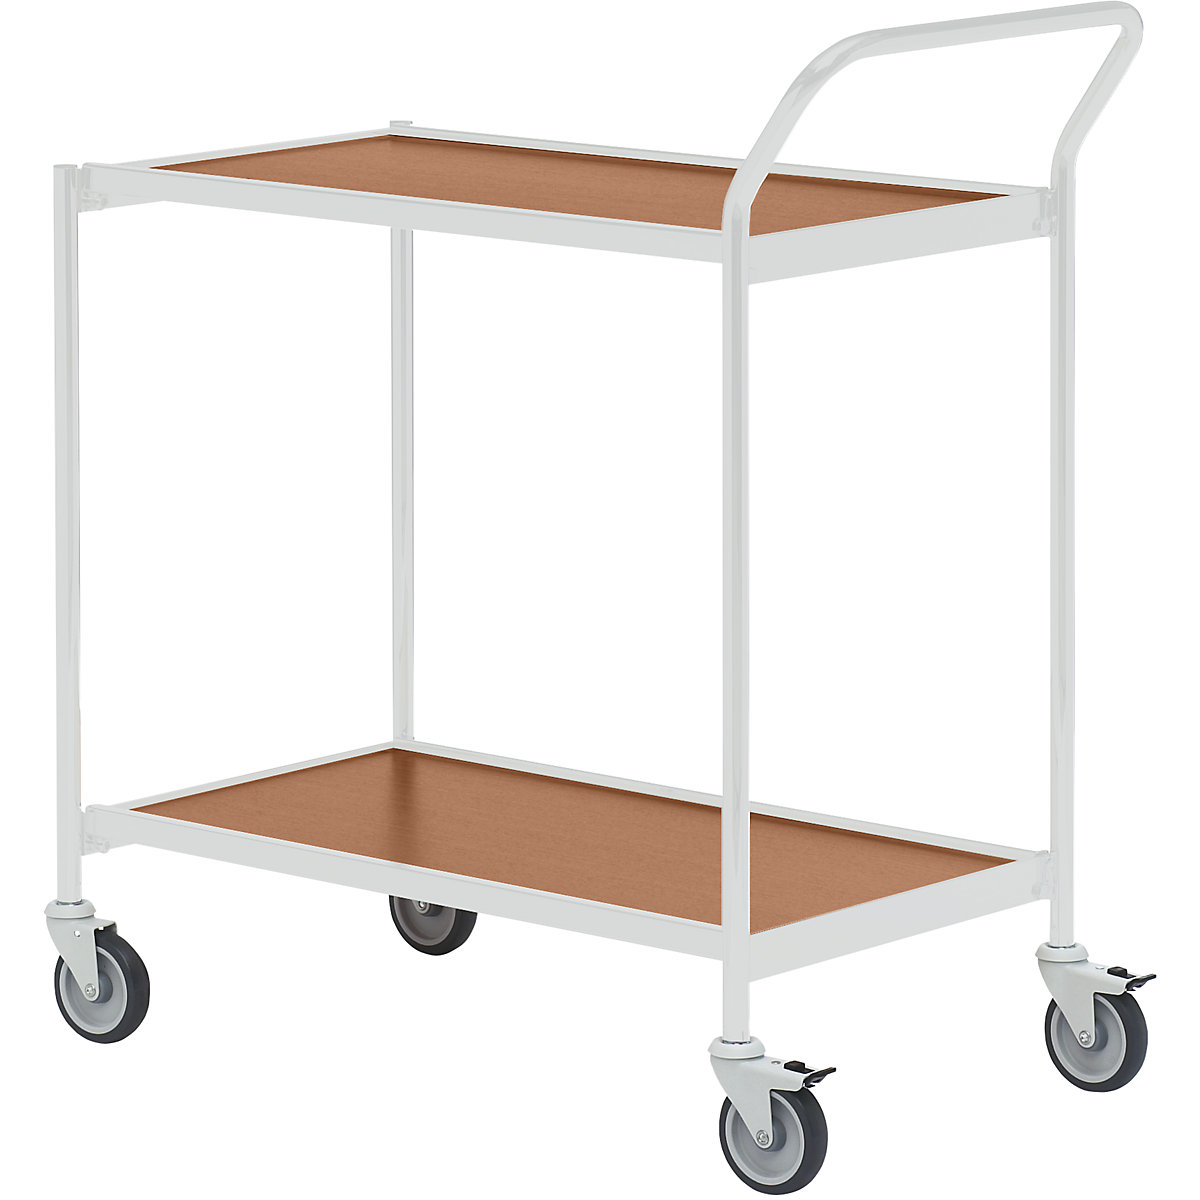 Stolový vozík – HelgeNyberg, 2 etáže, d x š 800 x 420 mm, šedá / buk, od 5 ks-44